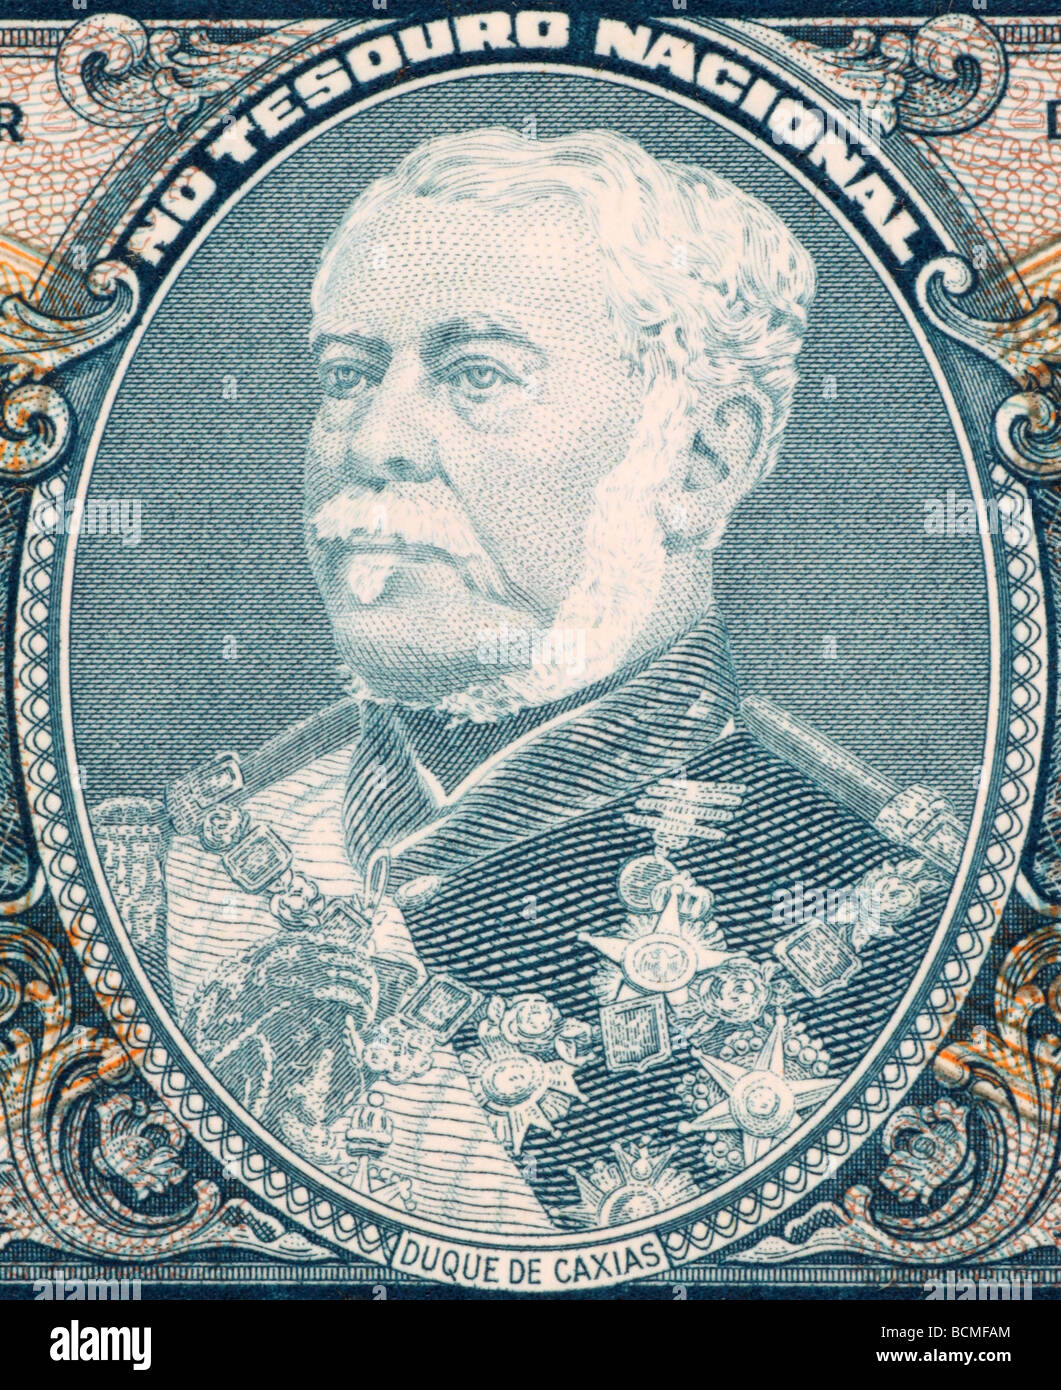 Duque de Caxias on 2 Cruzerios 1956 Banknote from Brazil Stock Photo